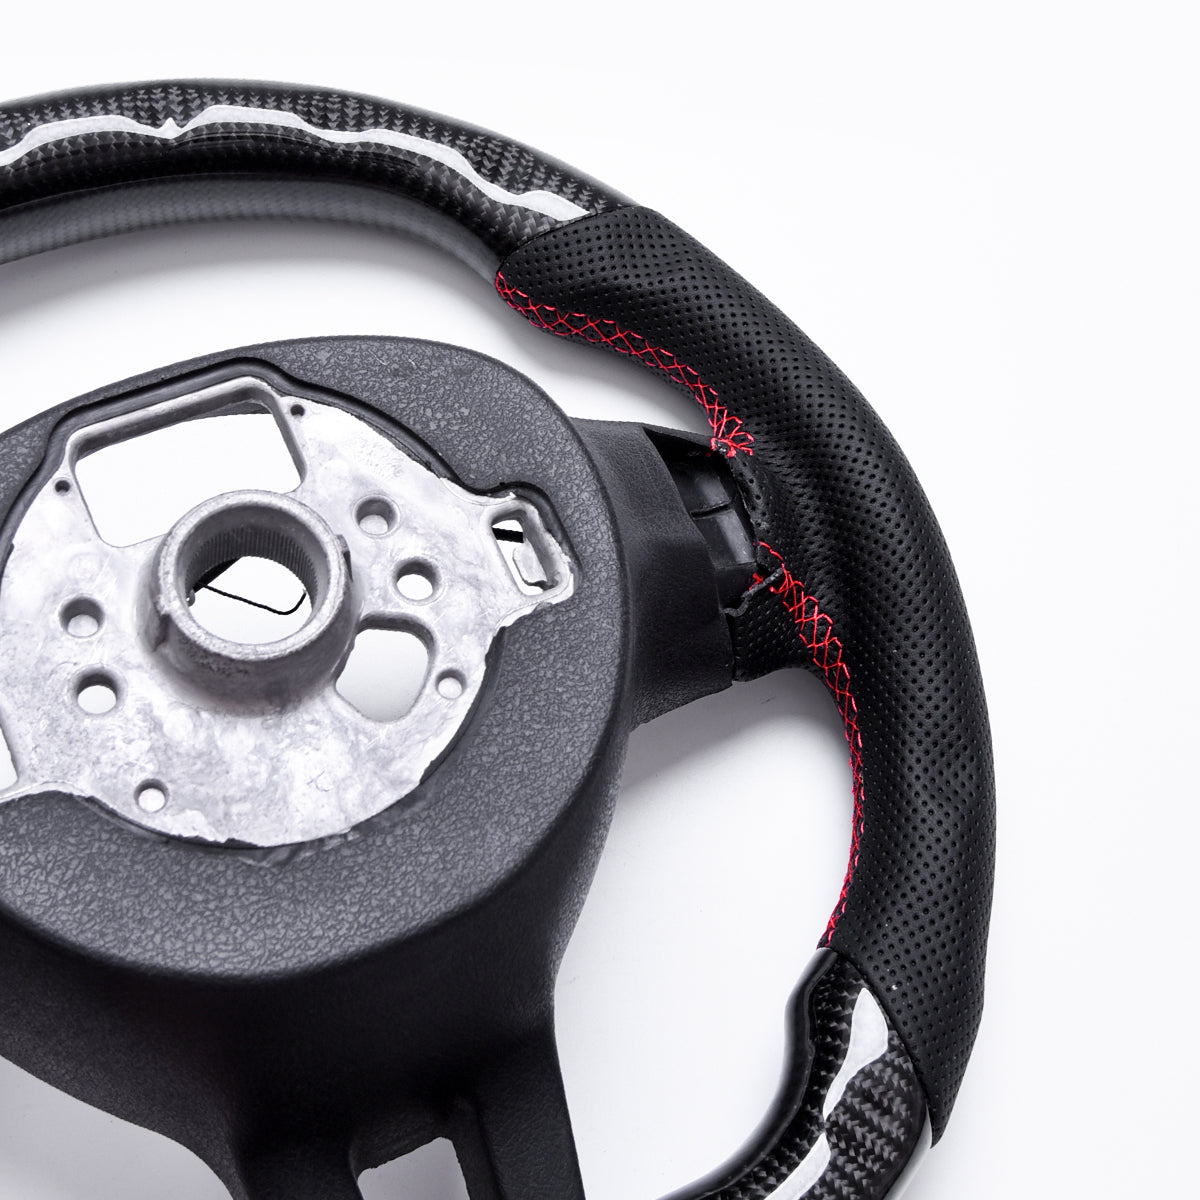 Revolve Carbon Fiber OEM LED Steering Wheel Volkswagen Golf 6 2010-2014 - revolvesteering